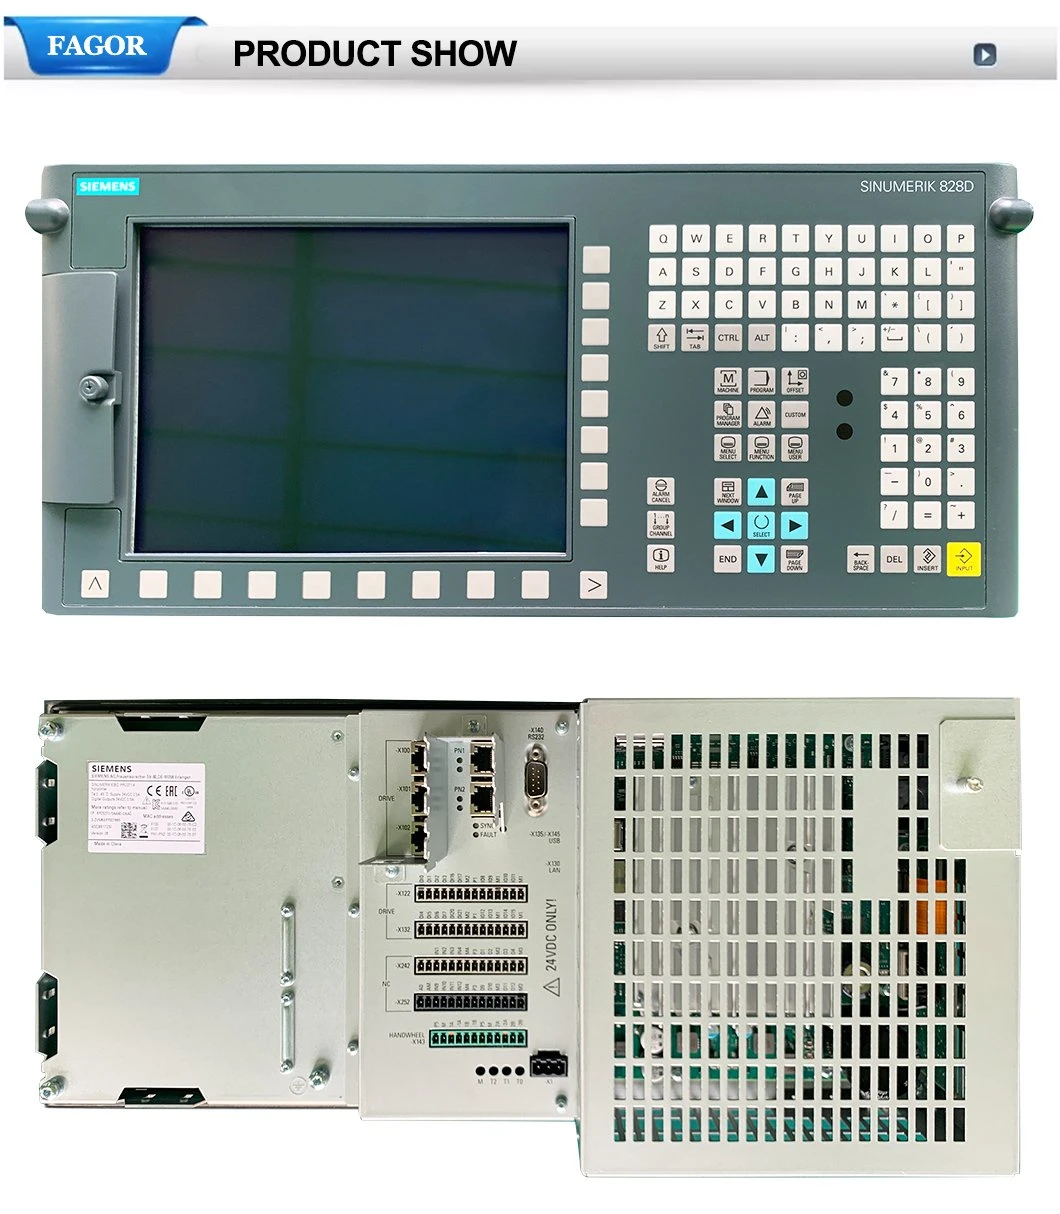 Siemens 828d CNC Lathe Controller for Vertical CNC Milling Machine